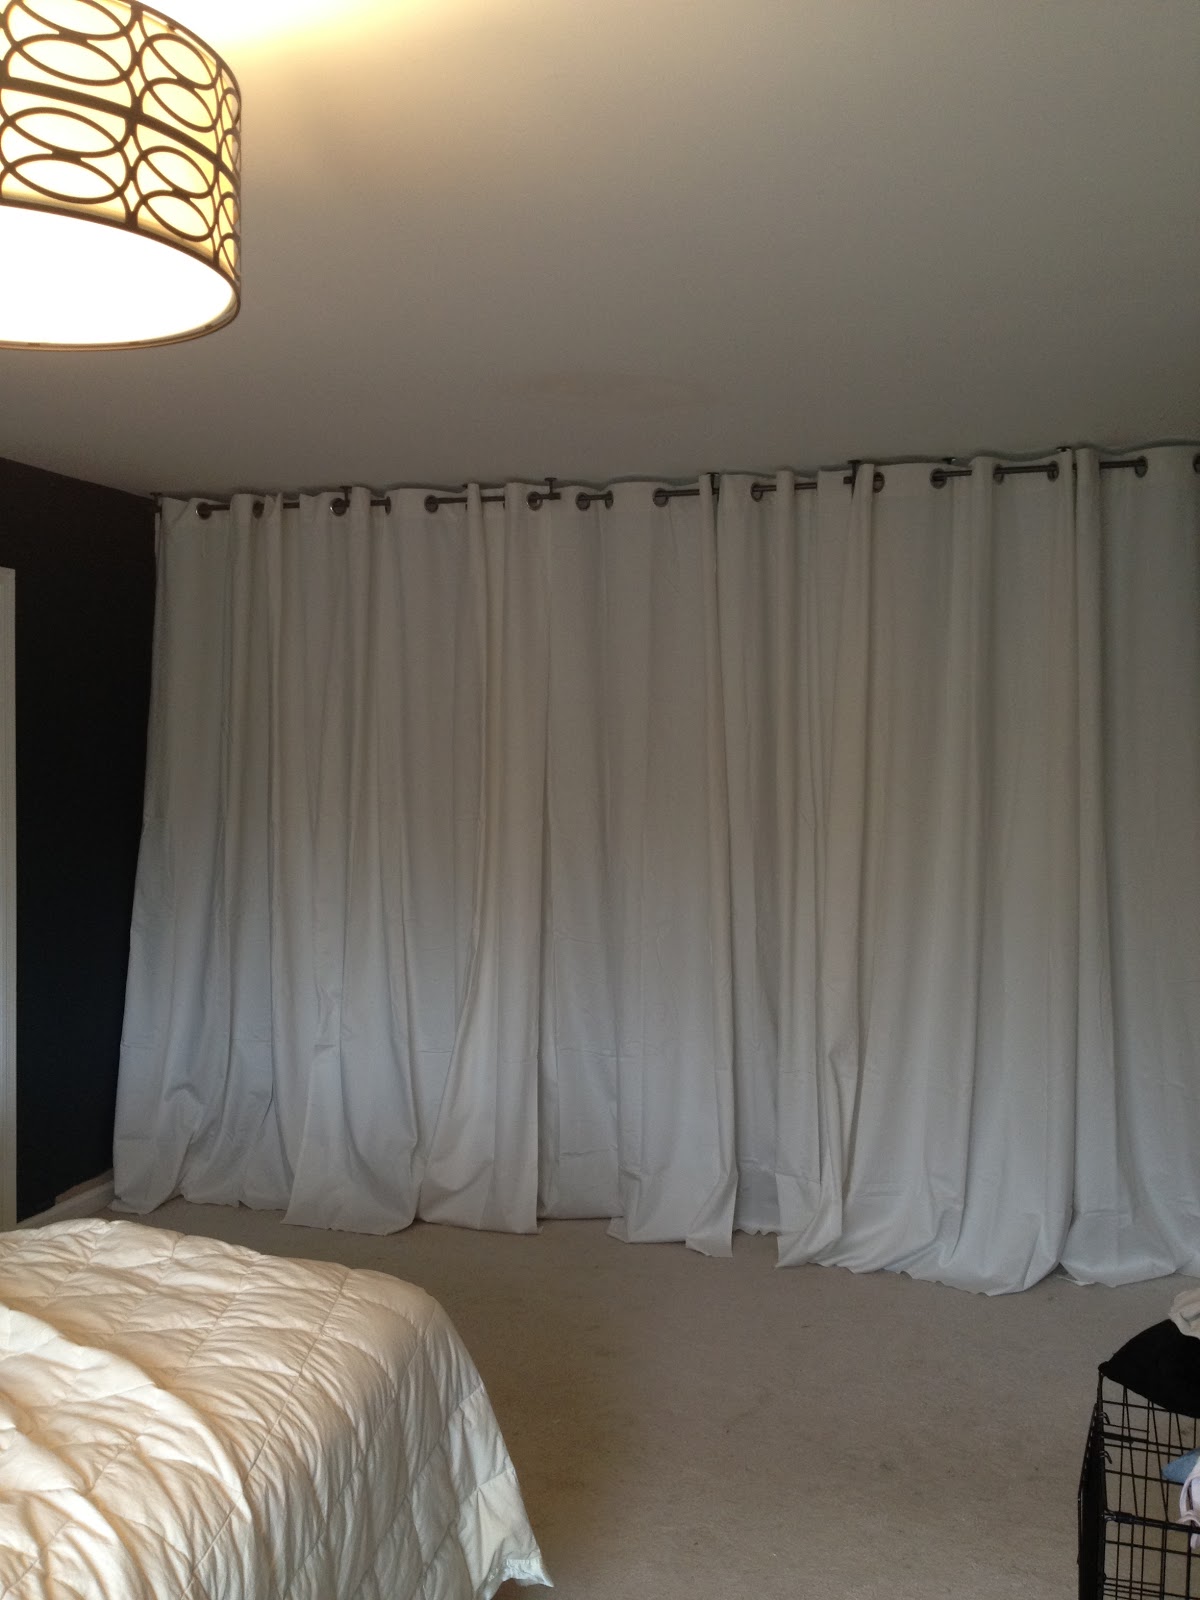 Diy curtain room divider